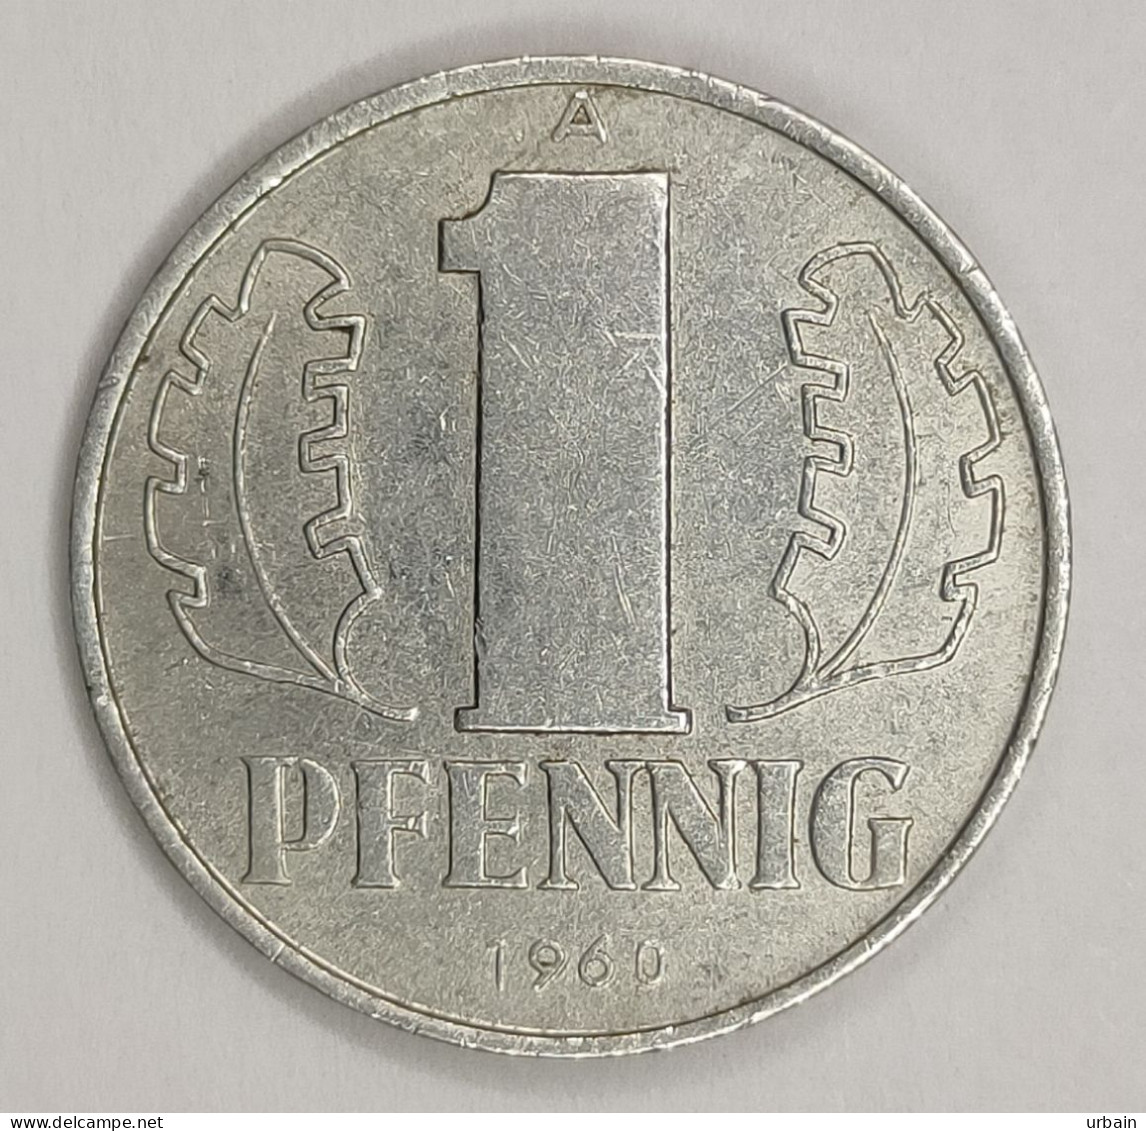 Lot 2 Coins - East Germany (DDR) (1948 – 1990) - 1 Pfennig - 1950, 1960 - 1 Pfennig